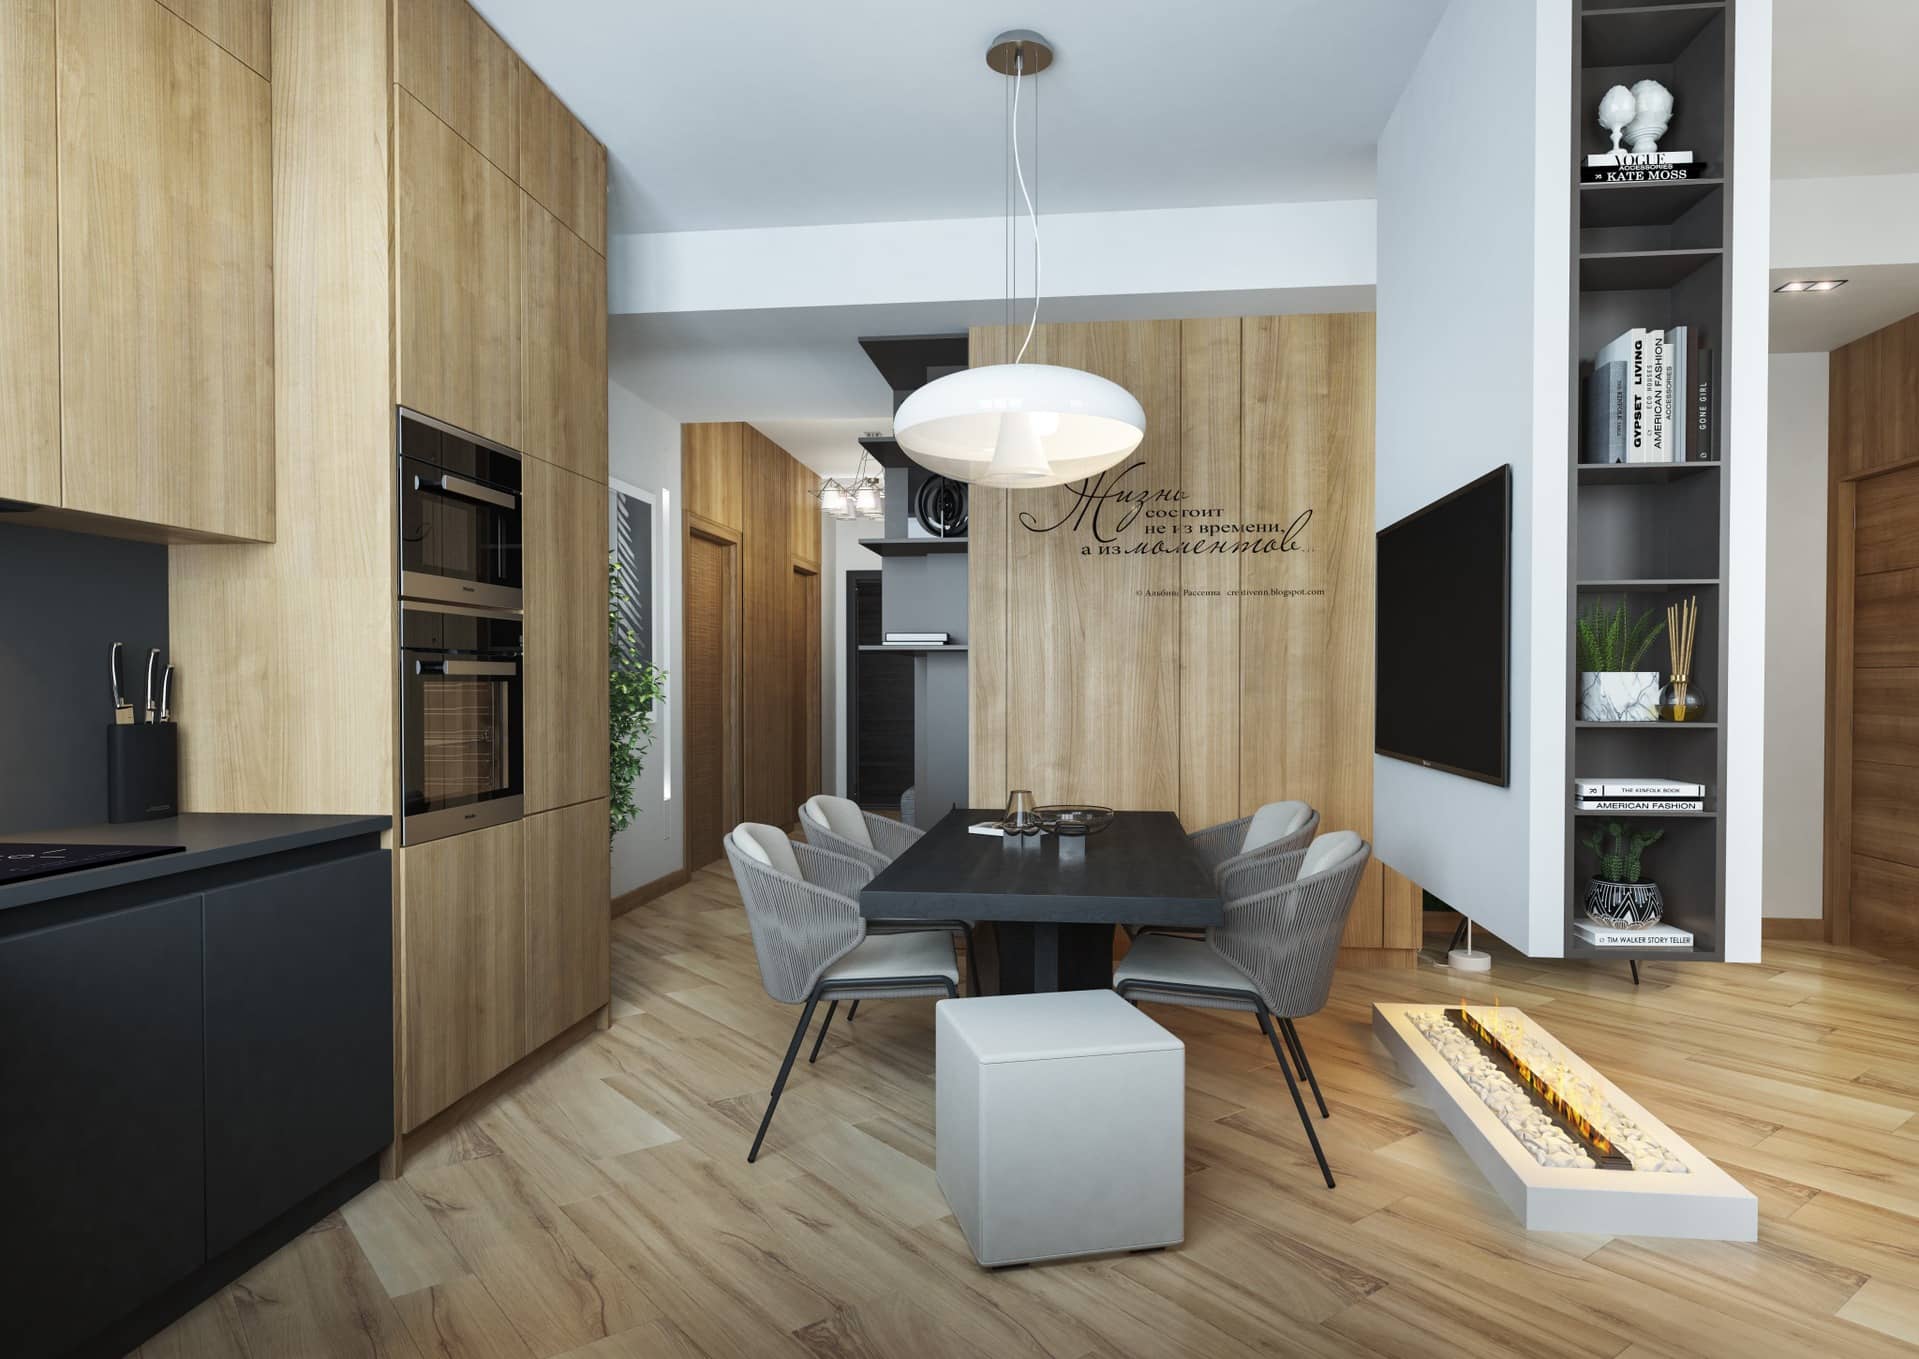 Поверхности и шкафы в кухне сделаны из древесины молодого дуба